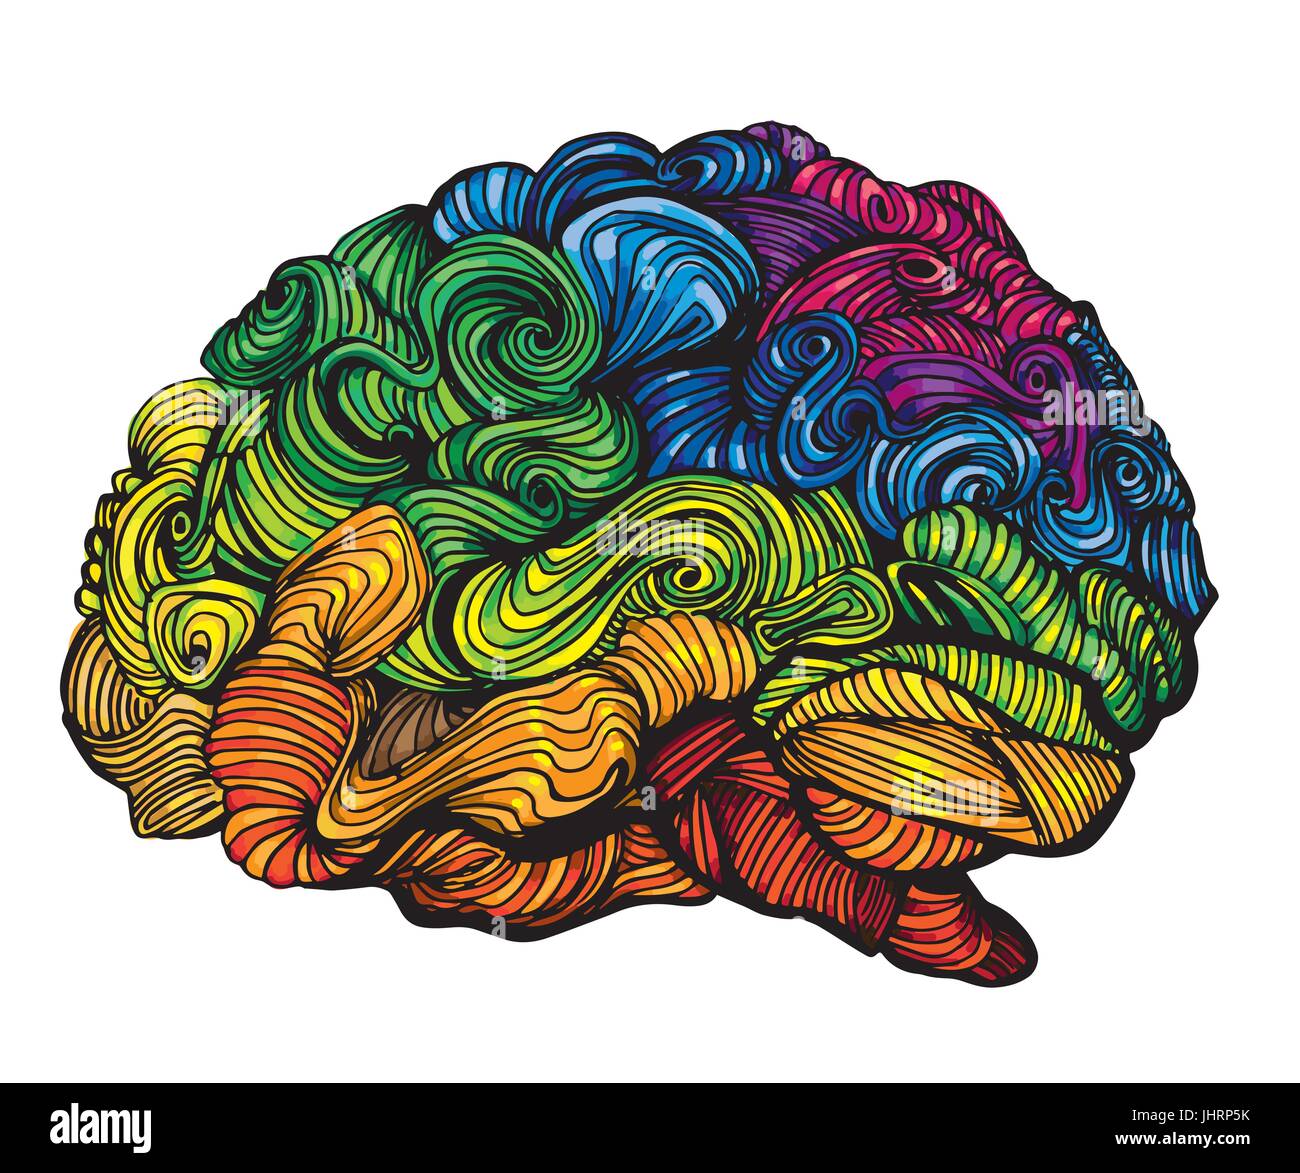 Gehirn Idee Illustration. Doodle-Vektor-Konzept über menschliche Gehirn. Kreative Illustration mit farbigen Gehirn und graue Substanz Stock Vektor